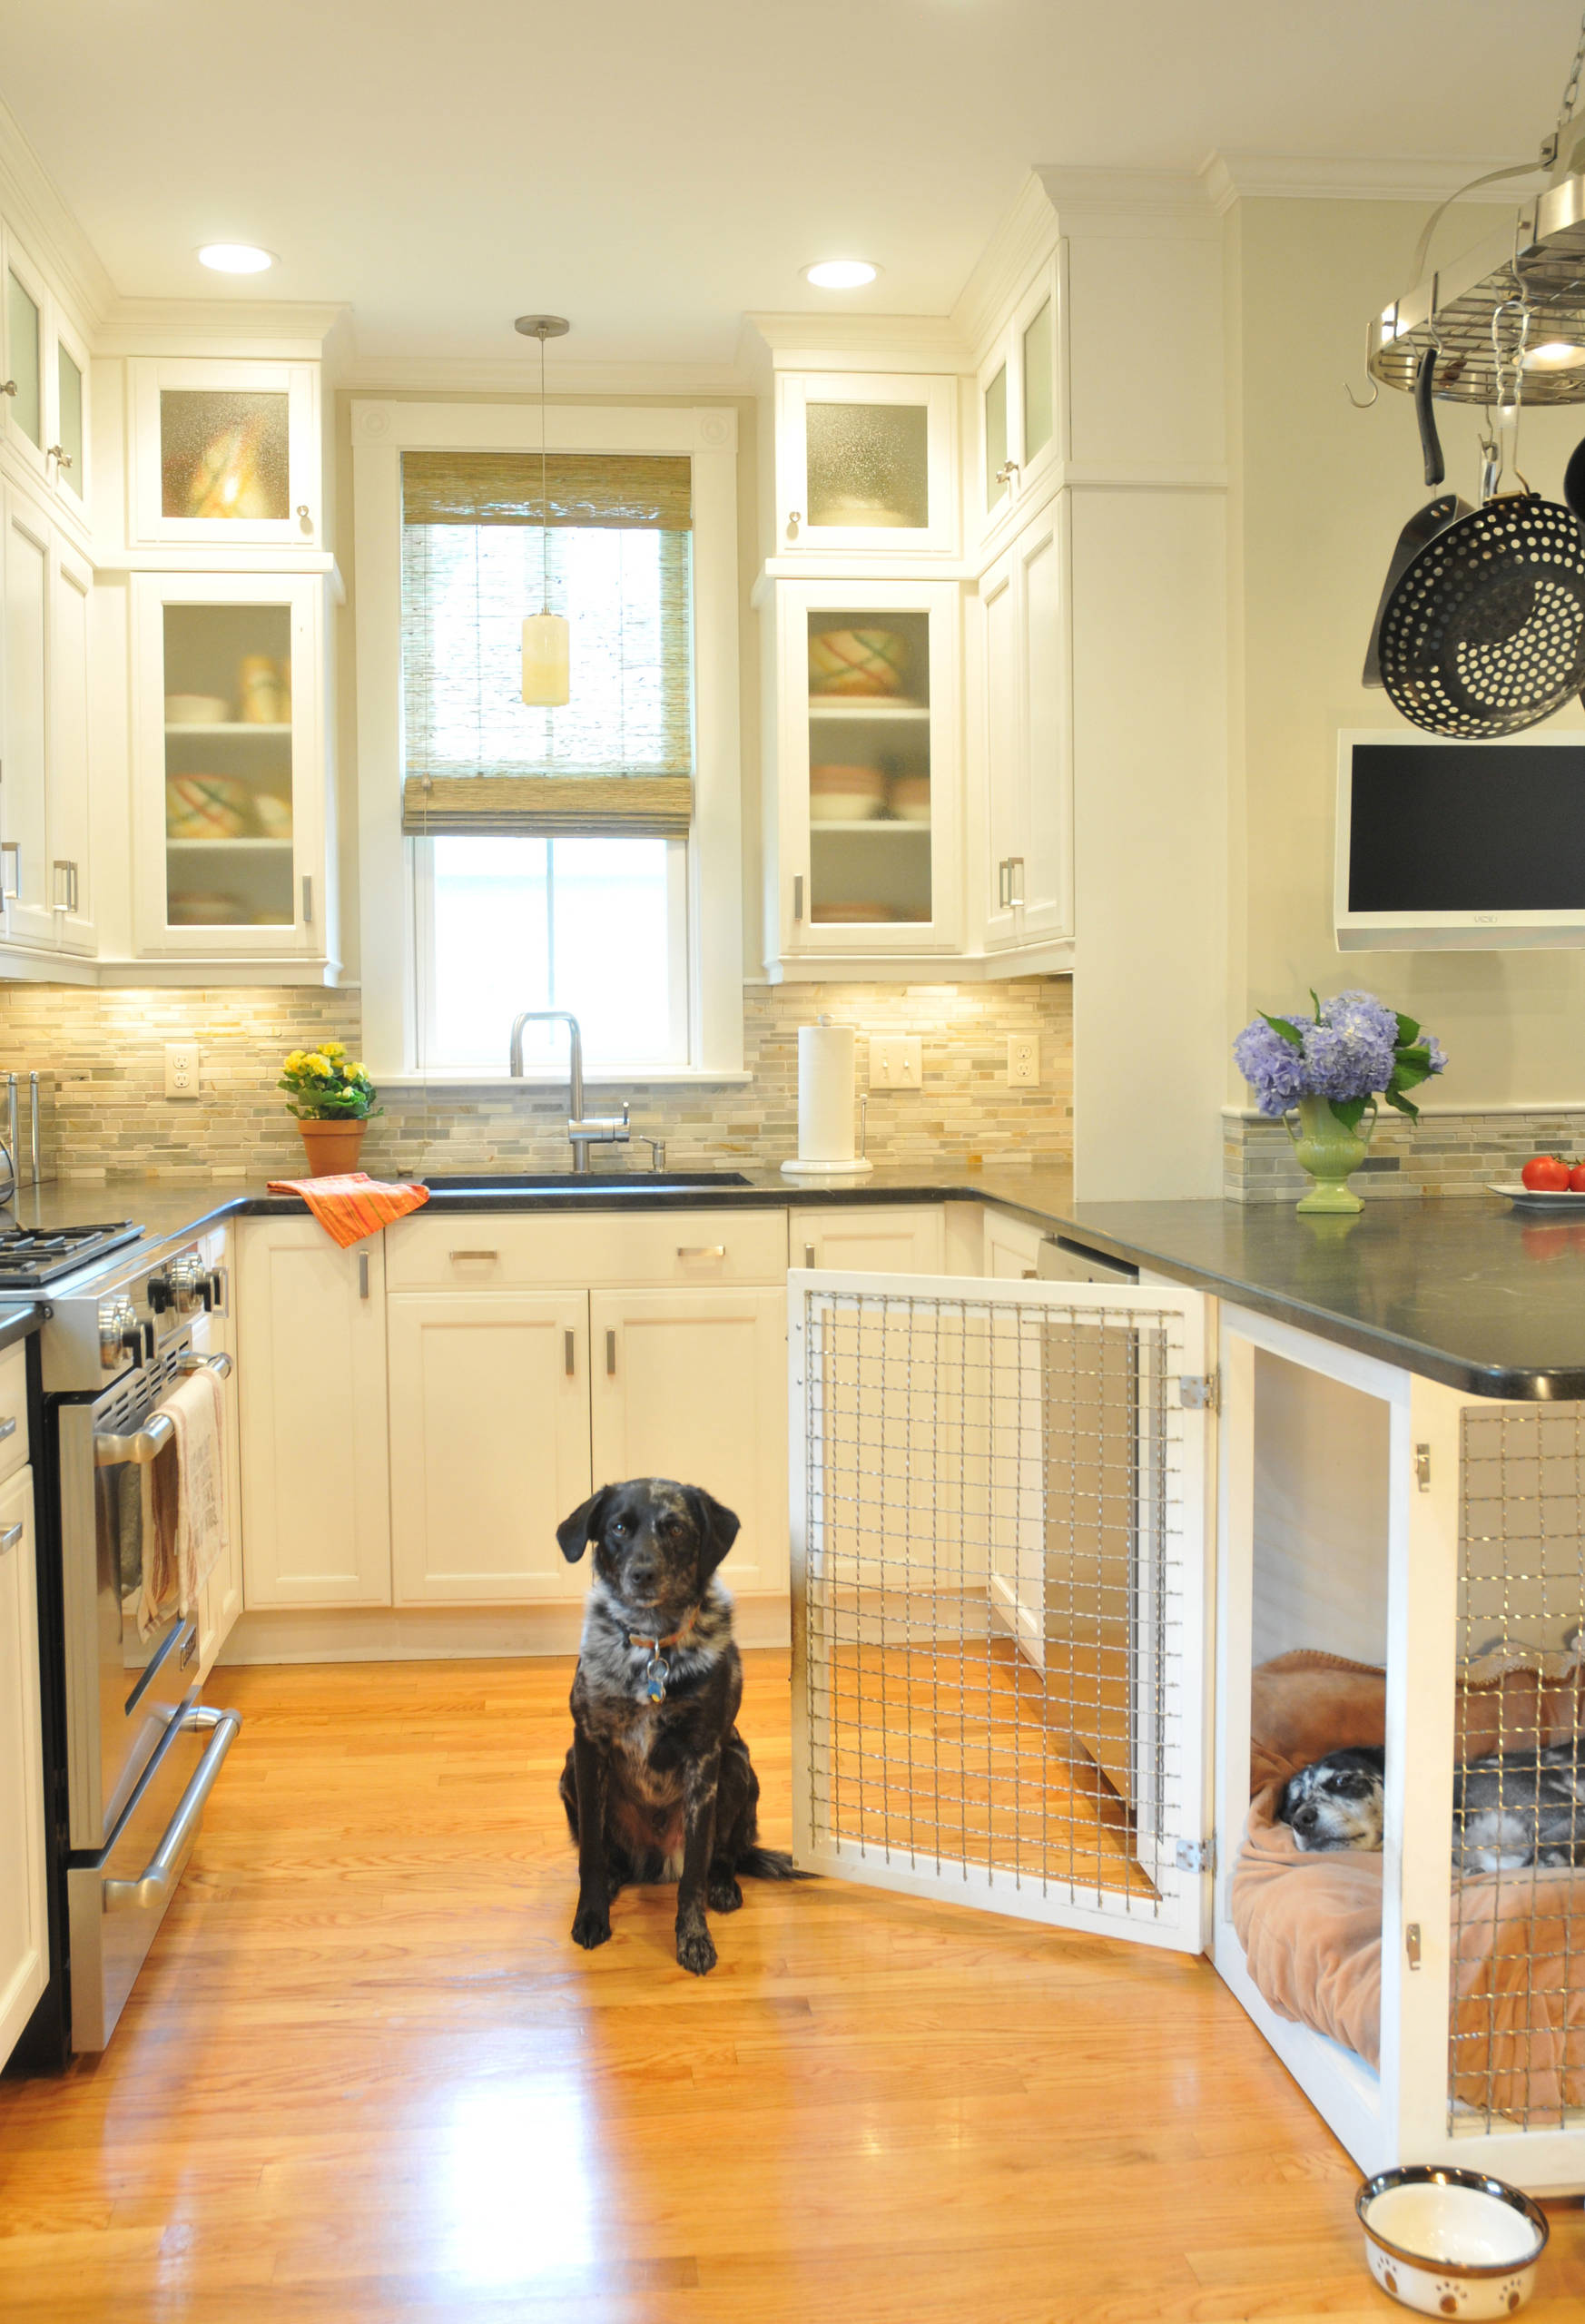 Vẫn lựa chọn phòng bếp là nơi “an cư” cho 2 chú chó nhưng chủ nhân ngôi nhà này đã cẩn thận hơn khi thiết kế thêm cửa lưới bằng kim loại để sử dụng khi cần thiết.